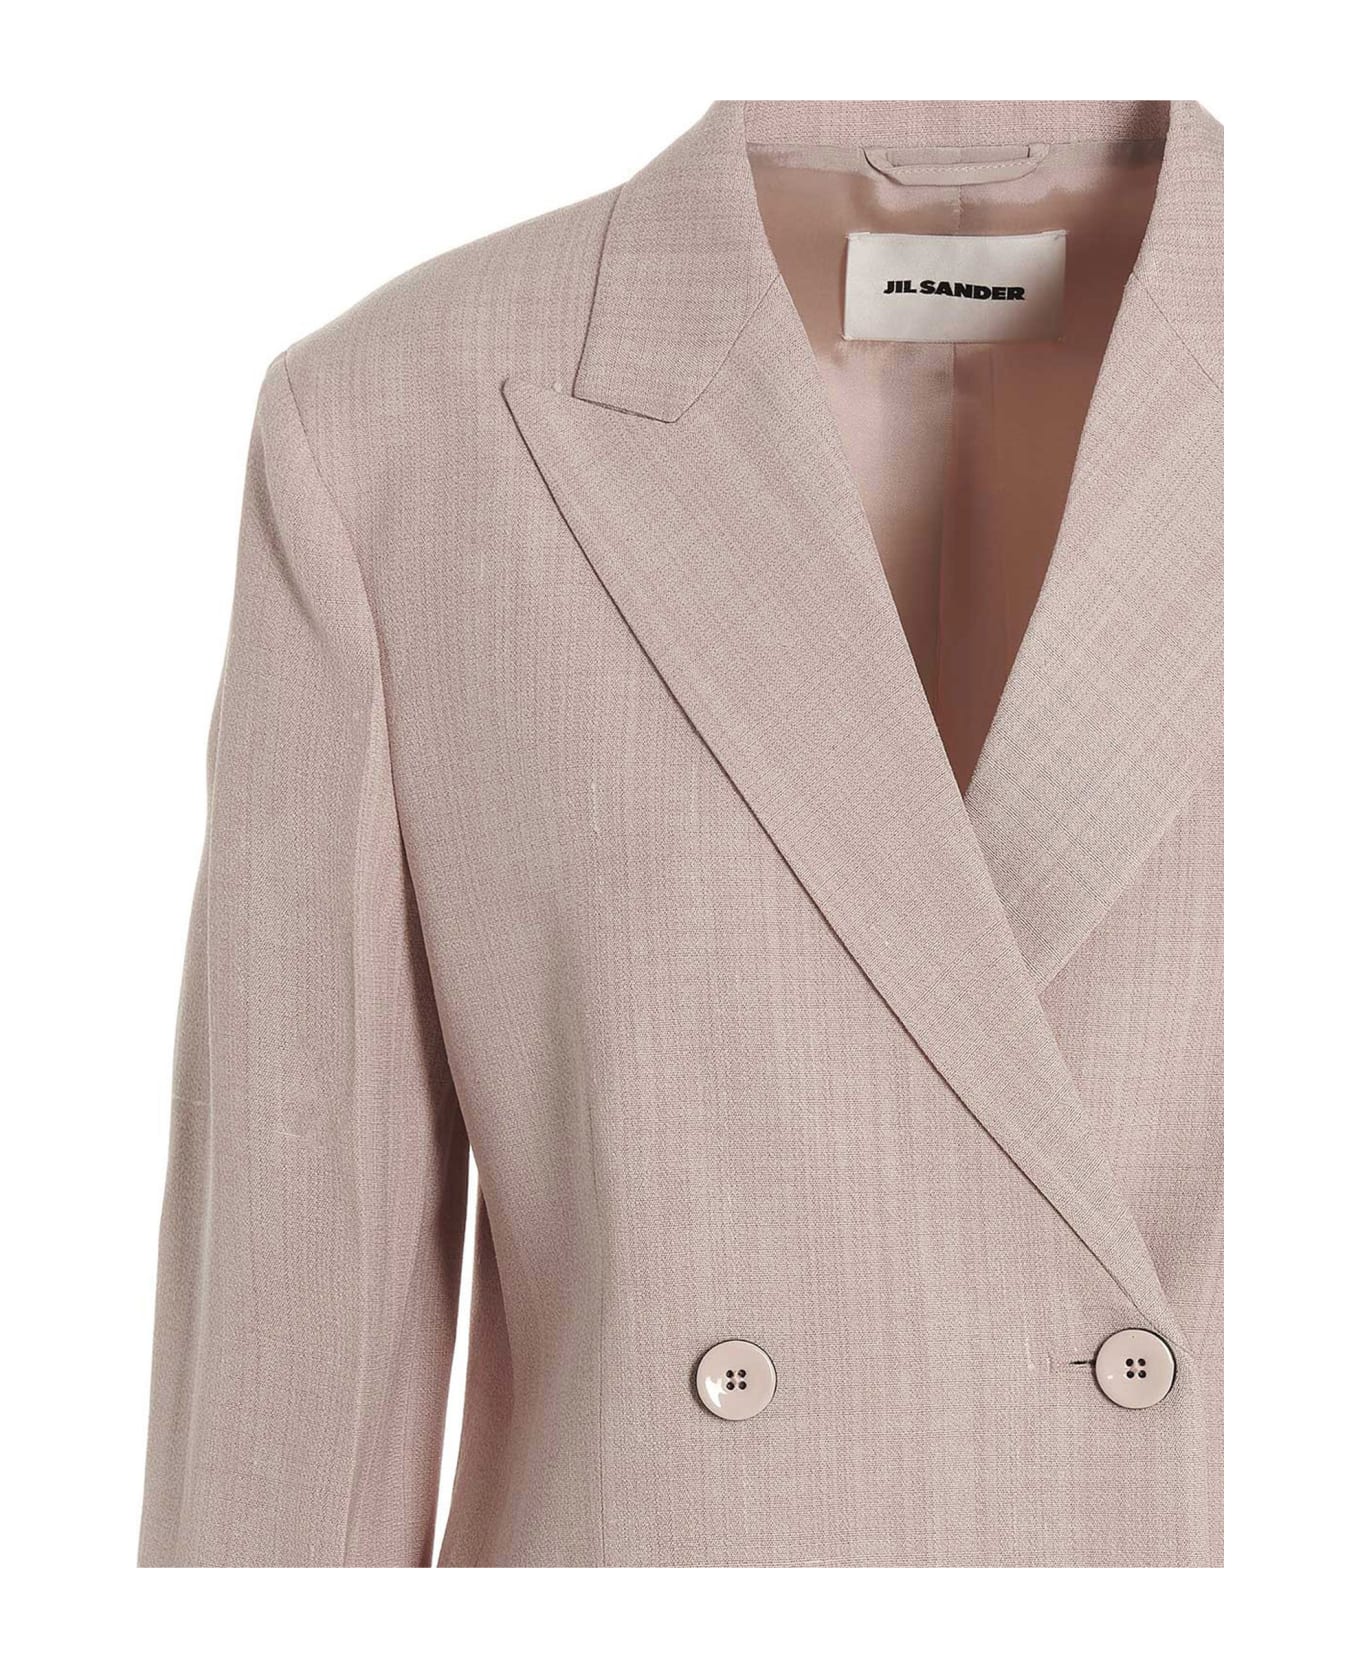 Jil Sander Double Breast Blazer Jacket - Pink コート